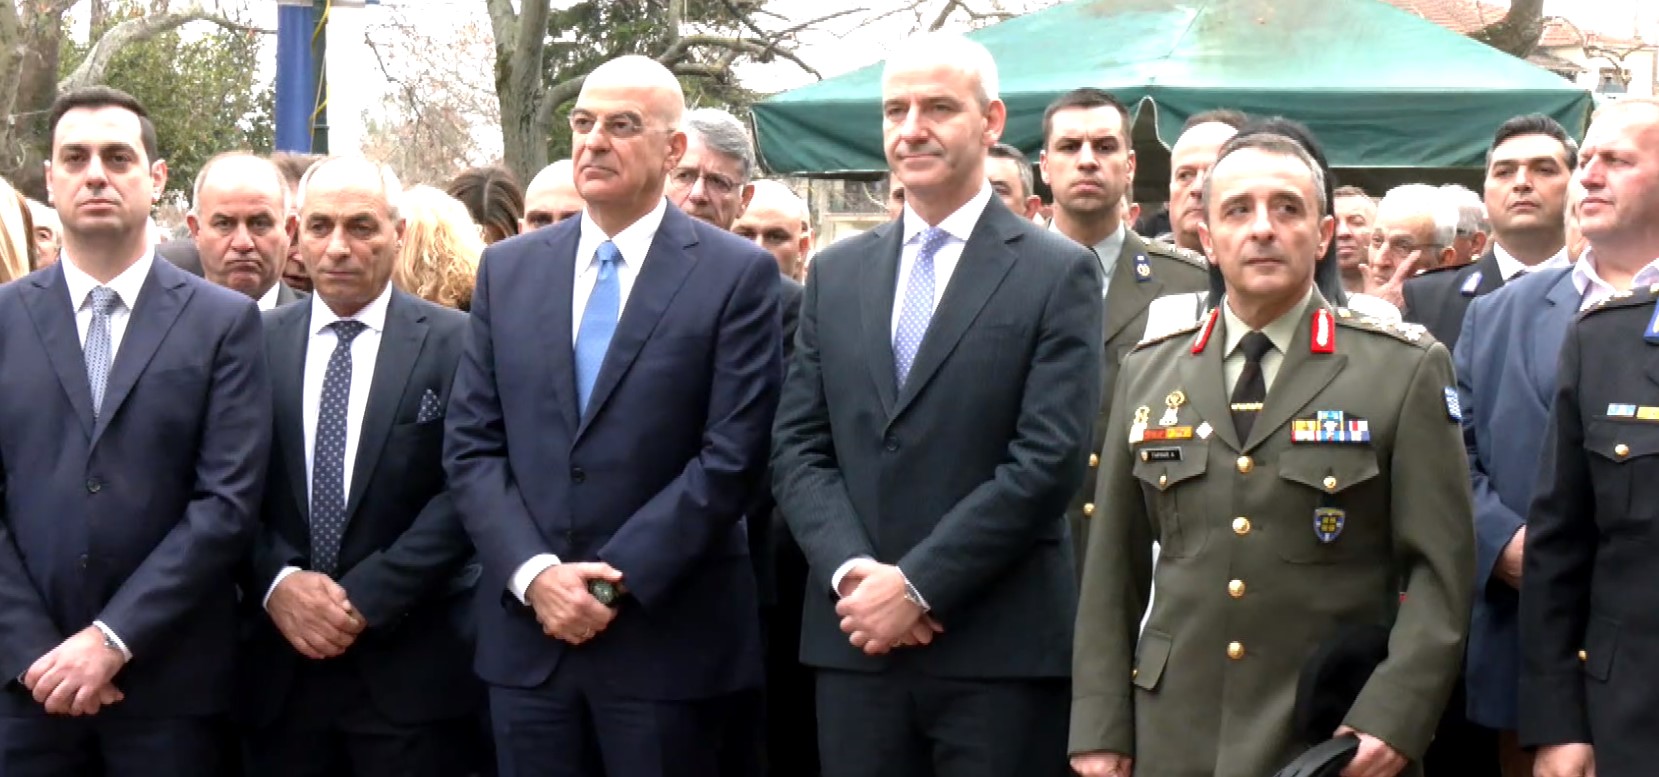 Παρουσία του υπουργού Εθνικής Άμυνας οι εορταστικές εκδηλώσεις για την επέτειο της επανάστασης του Κολινδρού